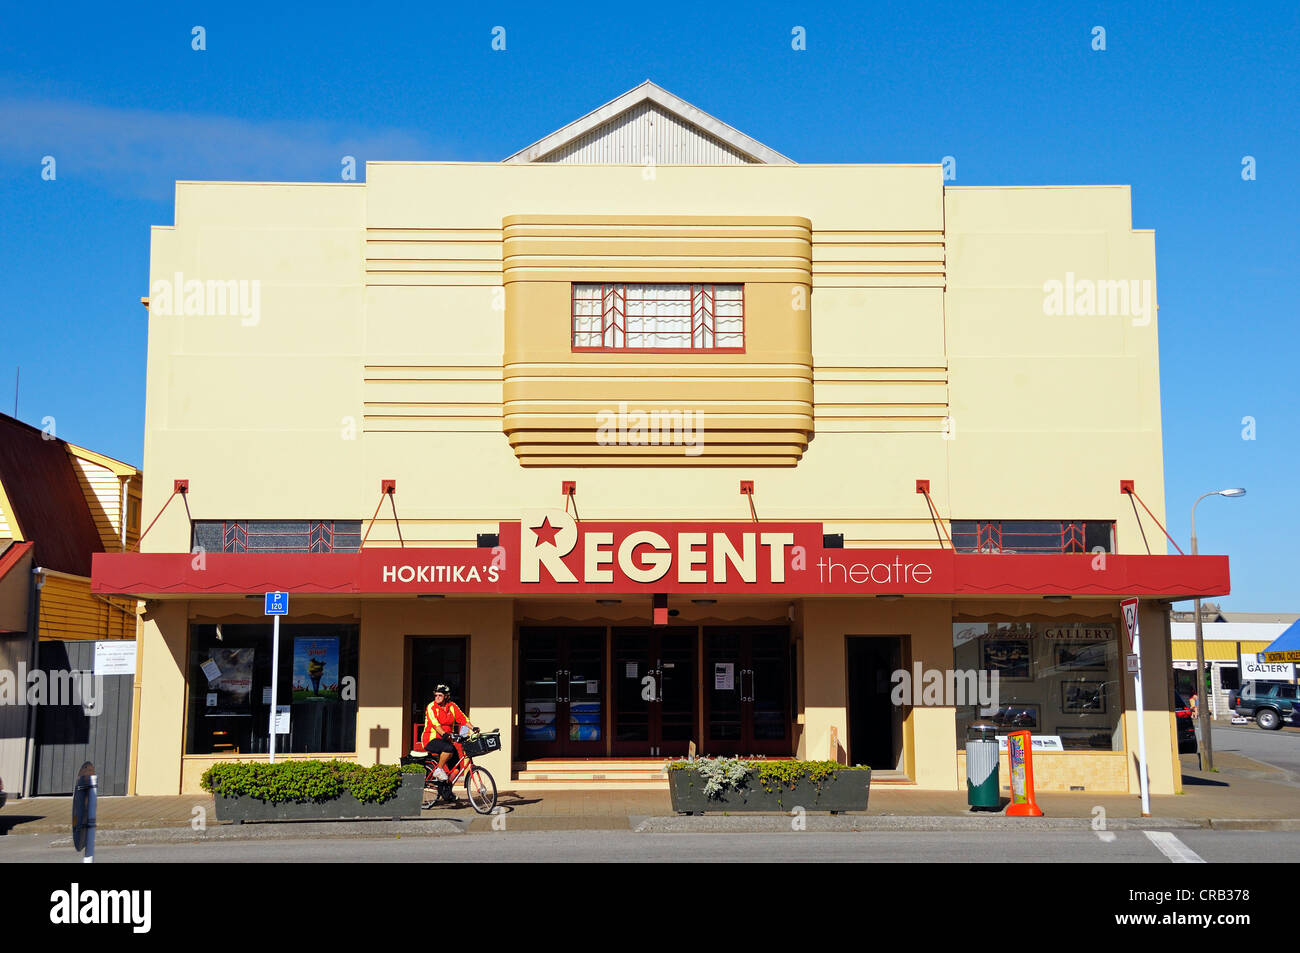 Movie Theater con elementi Art Deco nella città di Hokitika, costa ovest dell'Isola del Sud della Nuova Zelanda Foto Stock